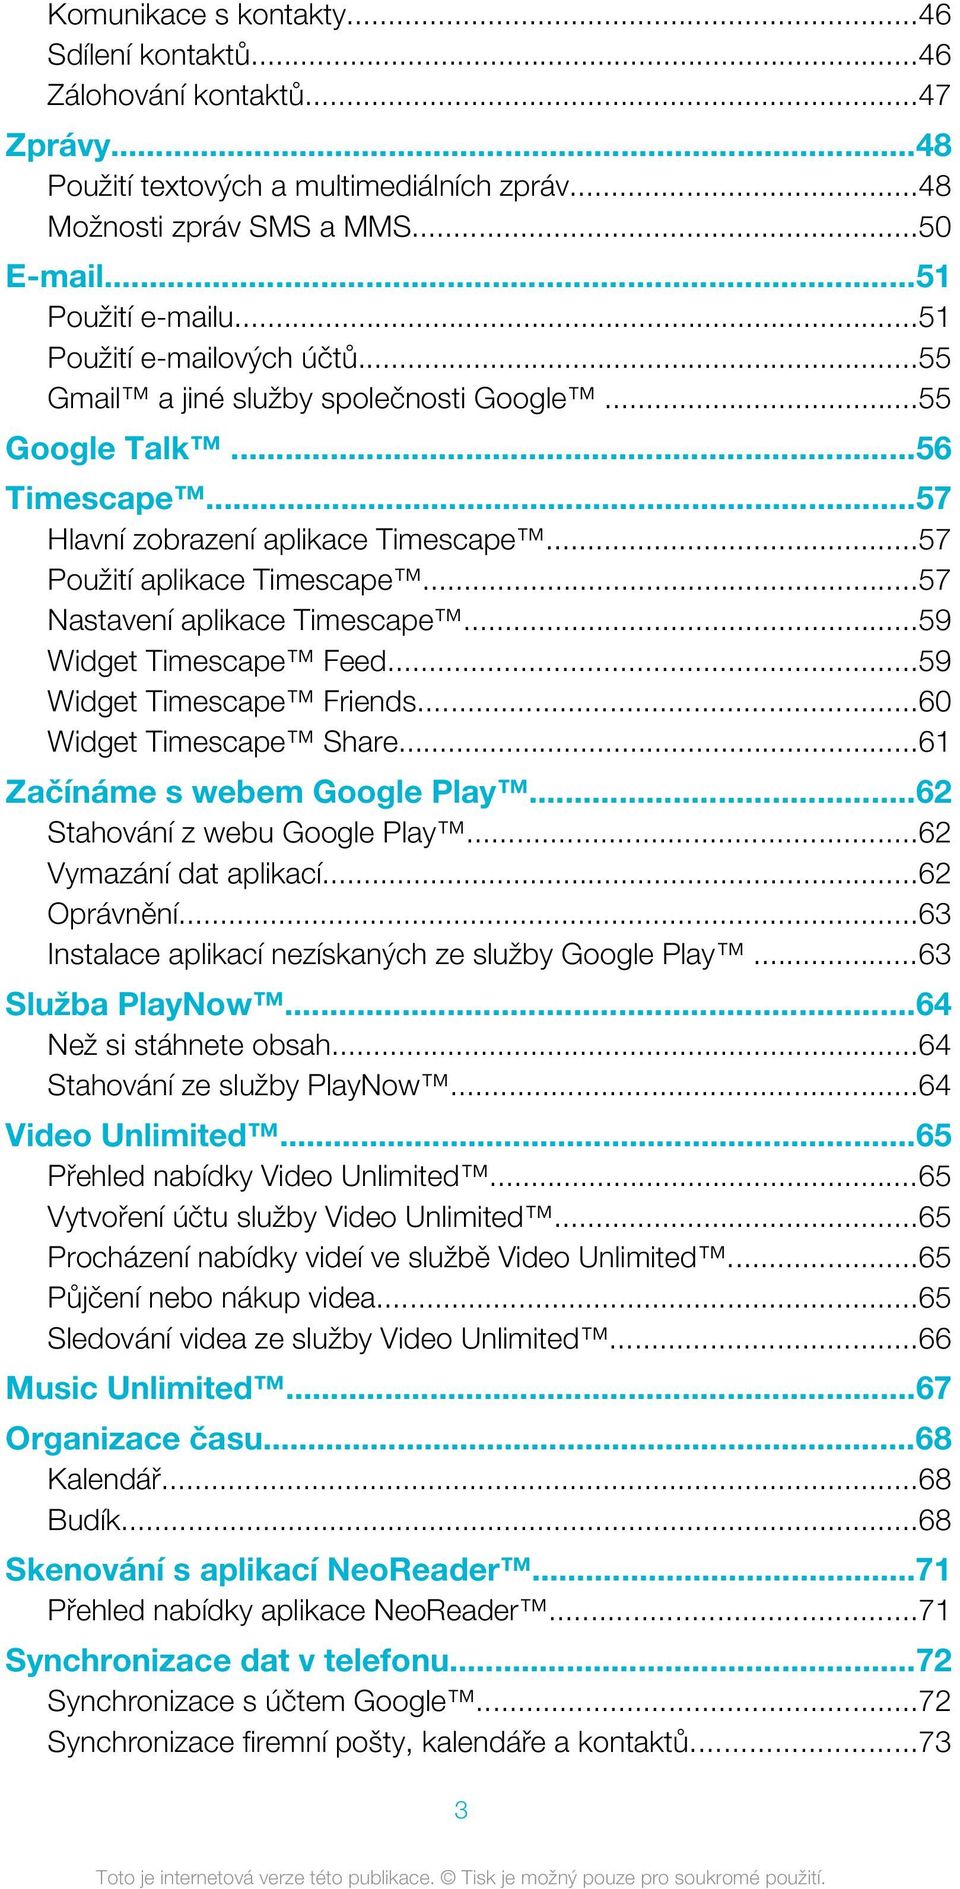 ..57 Nastavení aplikace Timescape...59 Widget Timescape Feed...59 Widget Timescape Friends...60 Widget Timescape Share...61 Začínáme s webem Google Play...62 Stahování z webu Google Play.